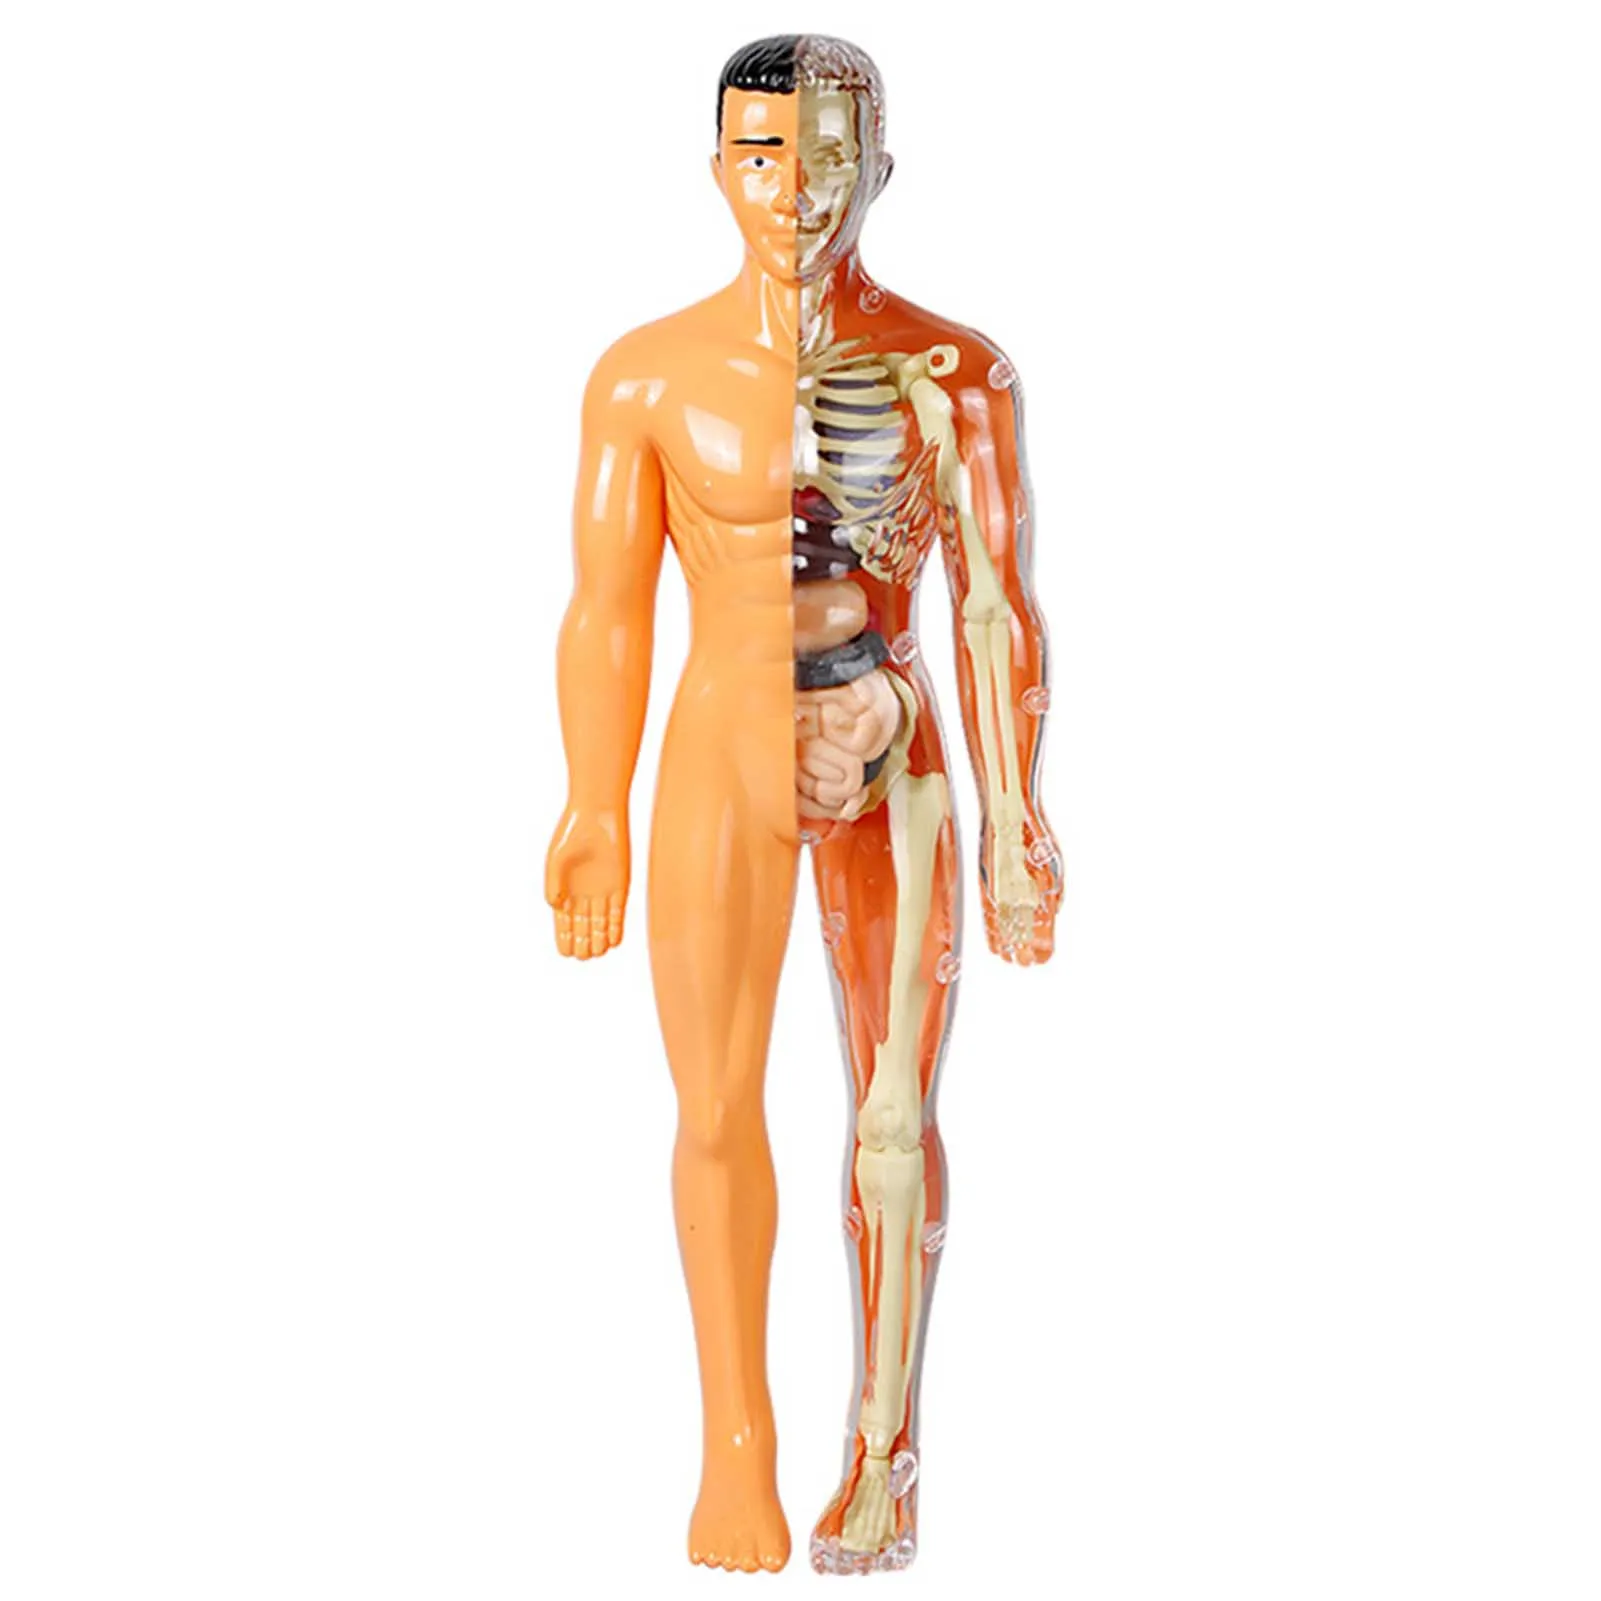 

3D модель человеческого для тела, обучающие игрушки для сборки человеческого тела, Обучающие инструменты для детей, научные когнитивные игрушки